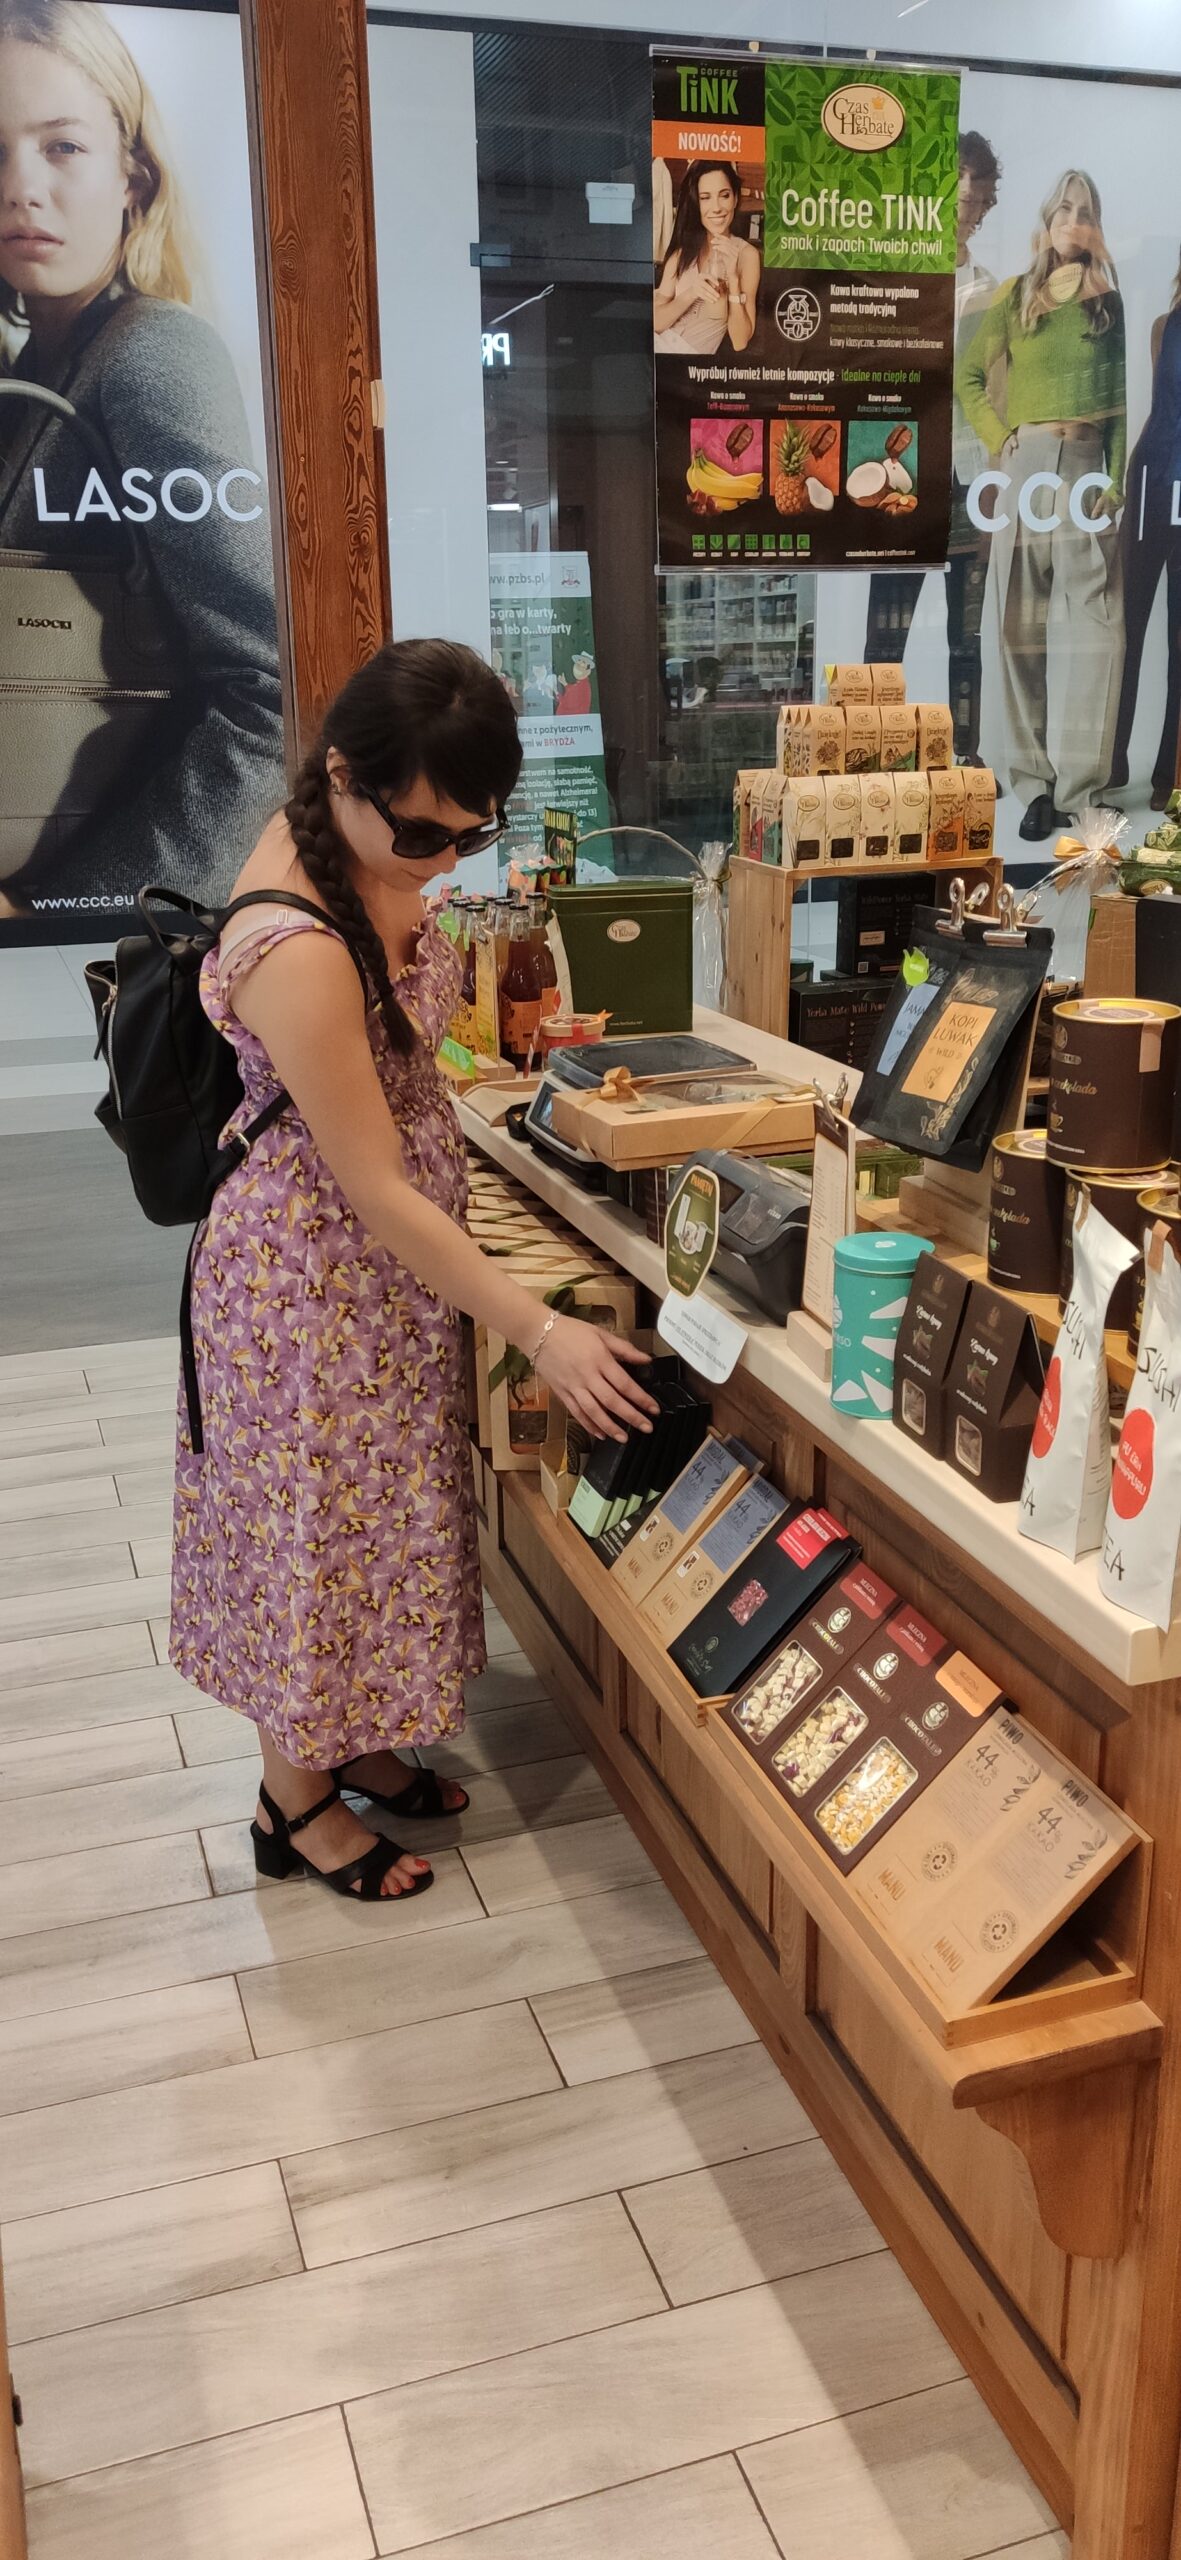 Niewidoma kobieta w sklepie.